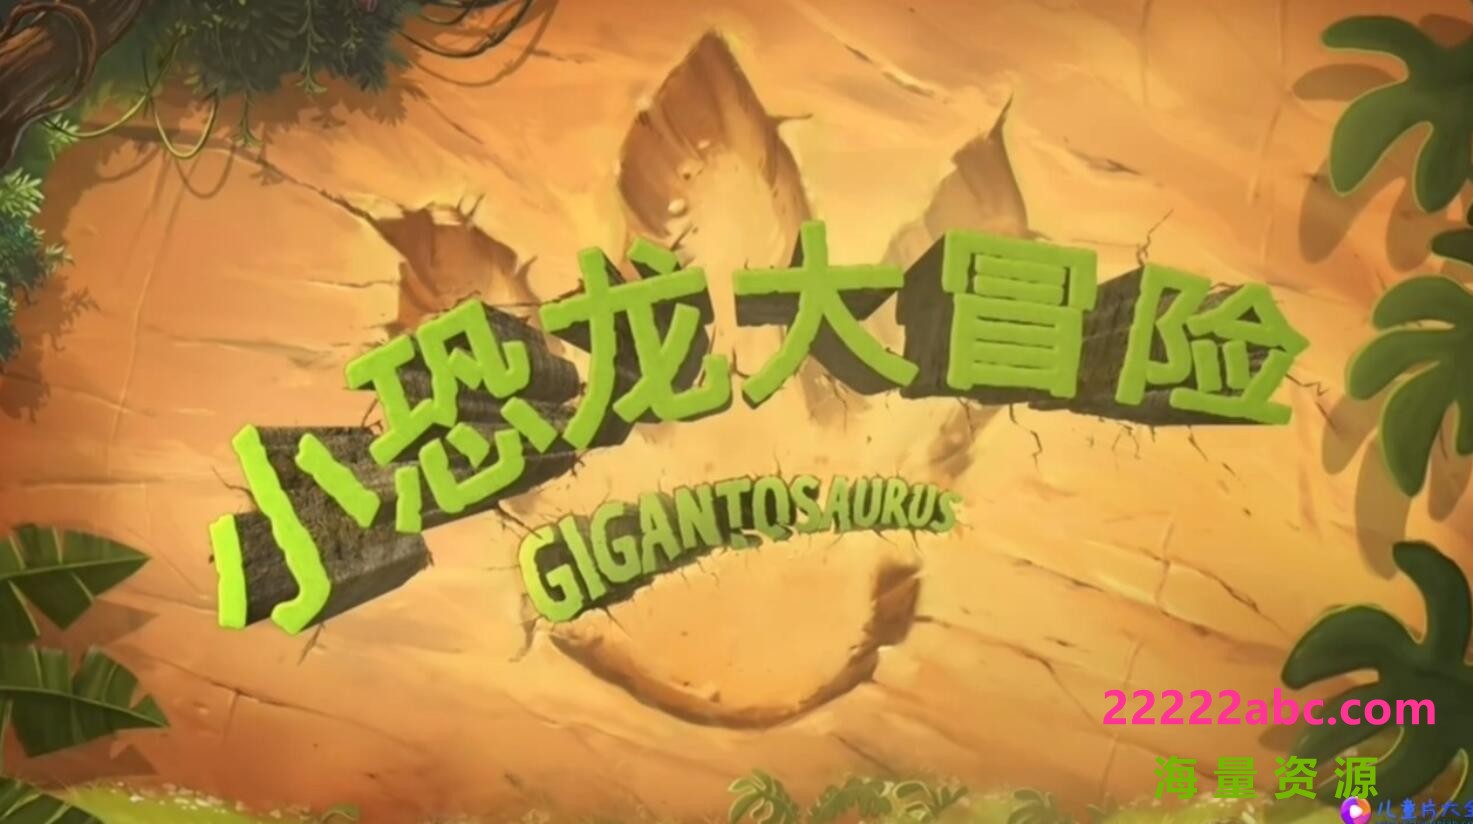 迪士尼儿童动画片《Gigantosaurus 小恐龙大冒险》中文版第一季全52集  mp4国语720p